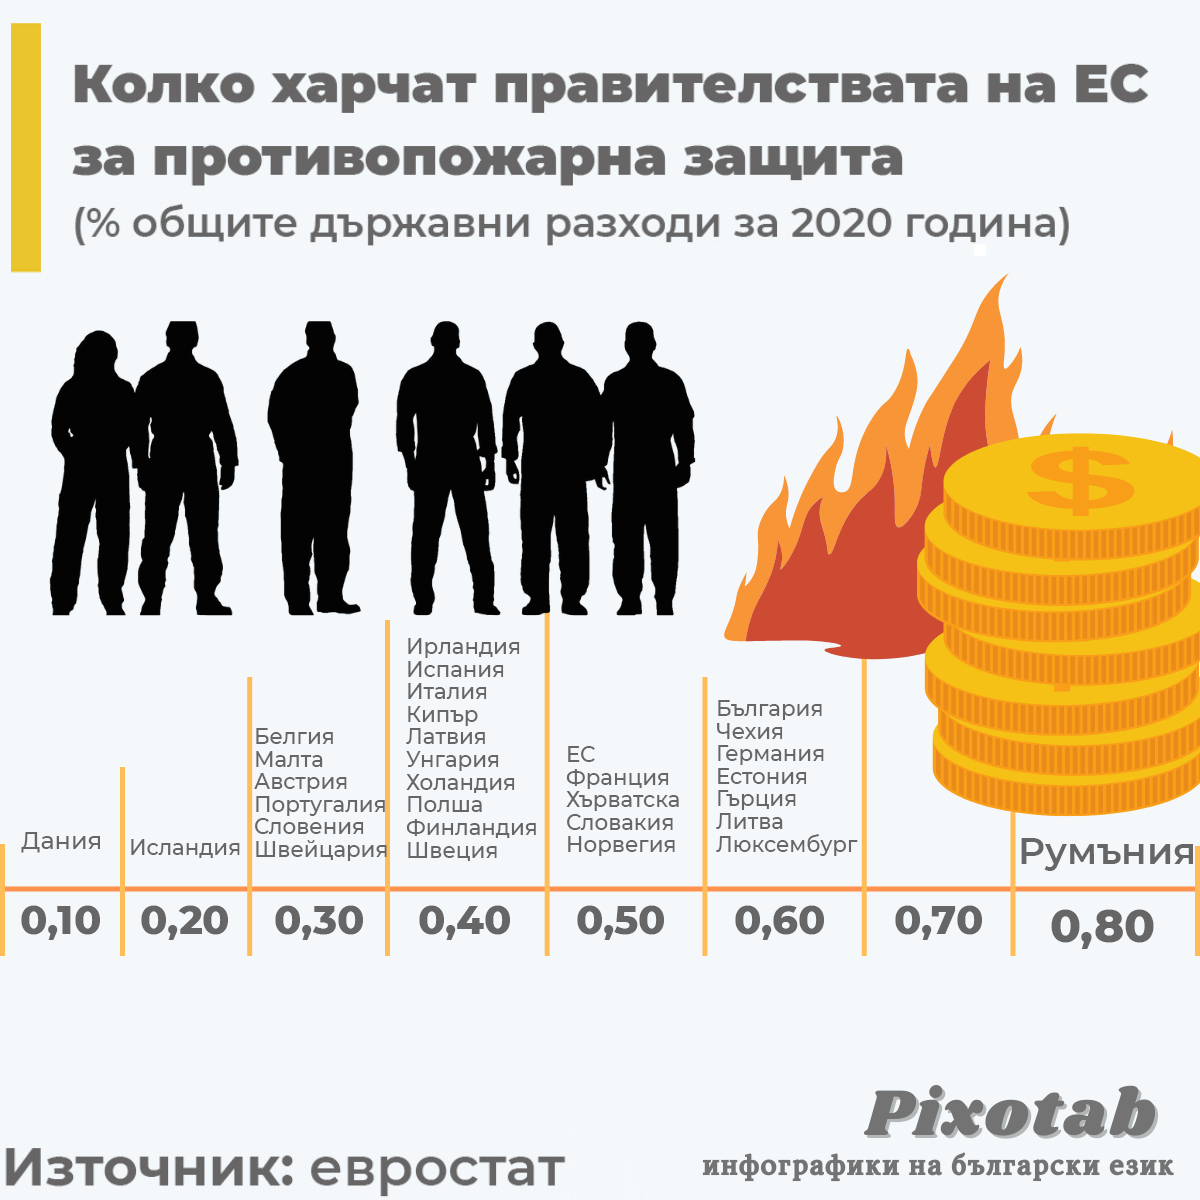 Колко харчат правителствата на ЕС за противопожарна защита